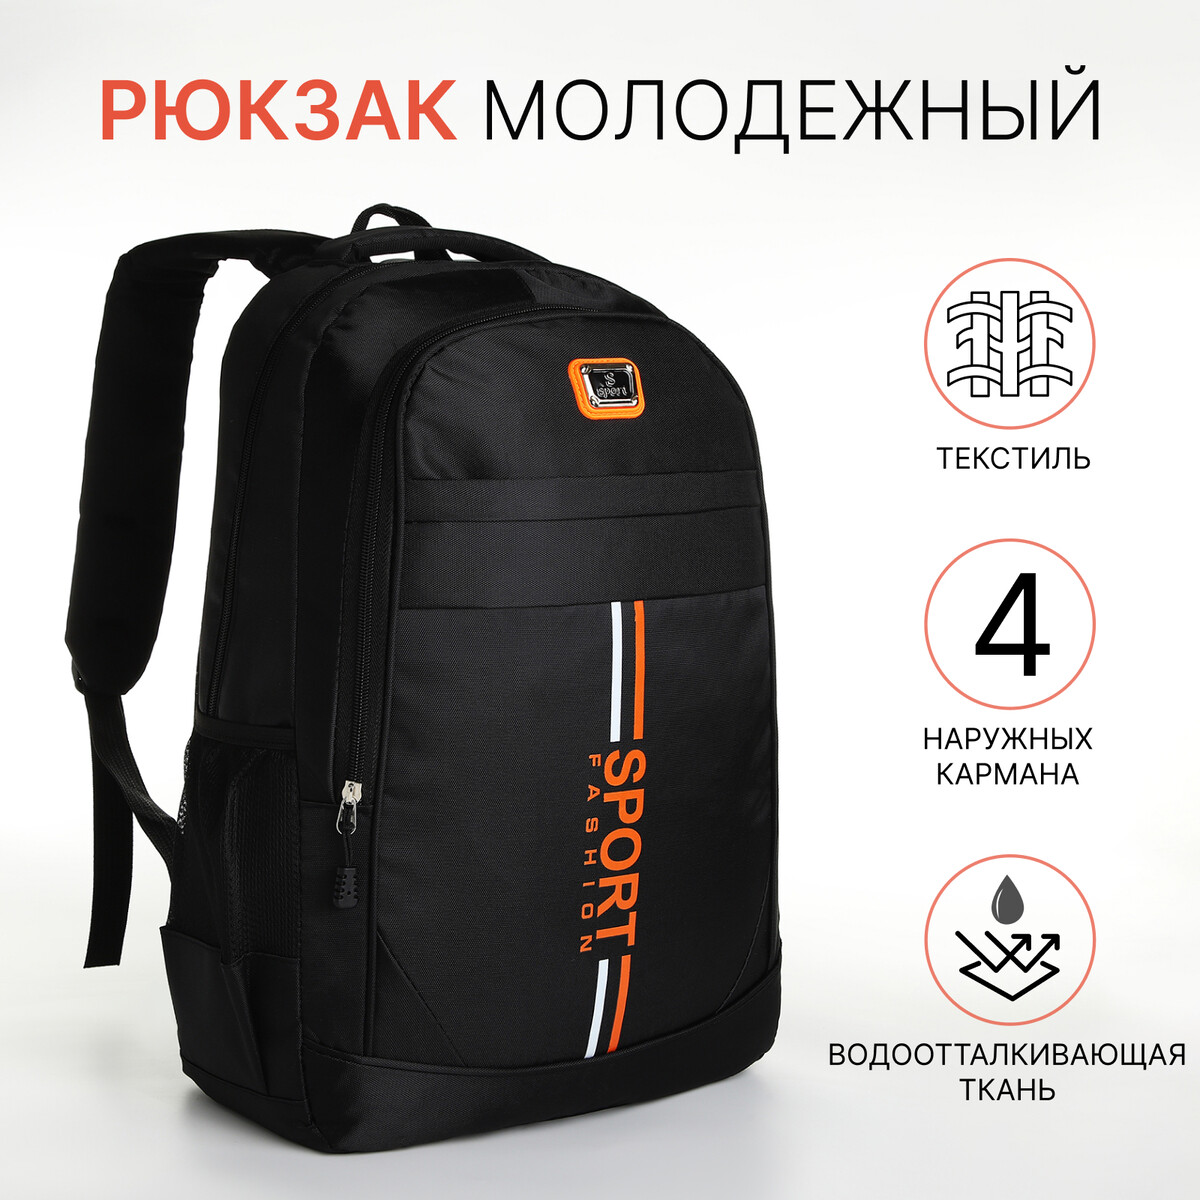 Рюкзак молодежный на молнии, 4 кармана, цвет черный/оранжевый